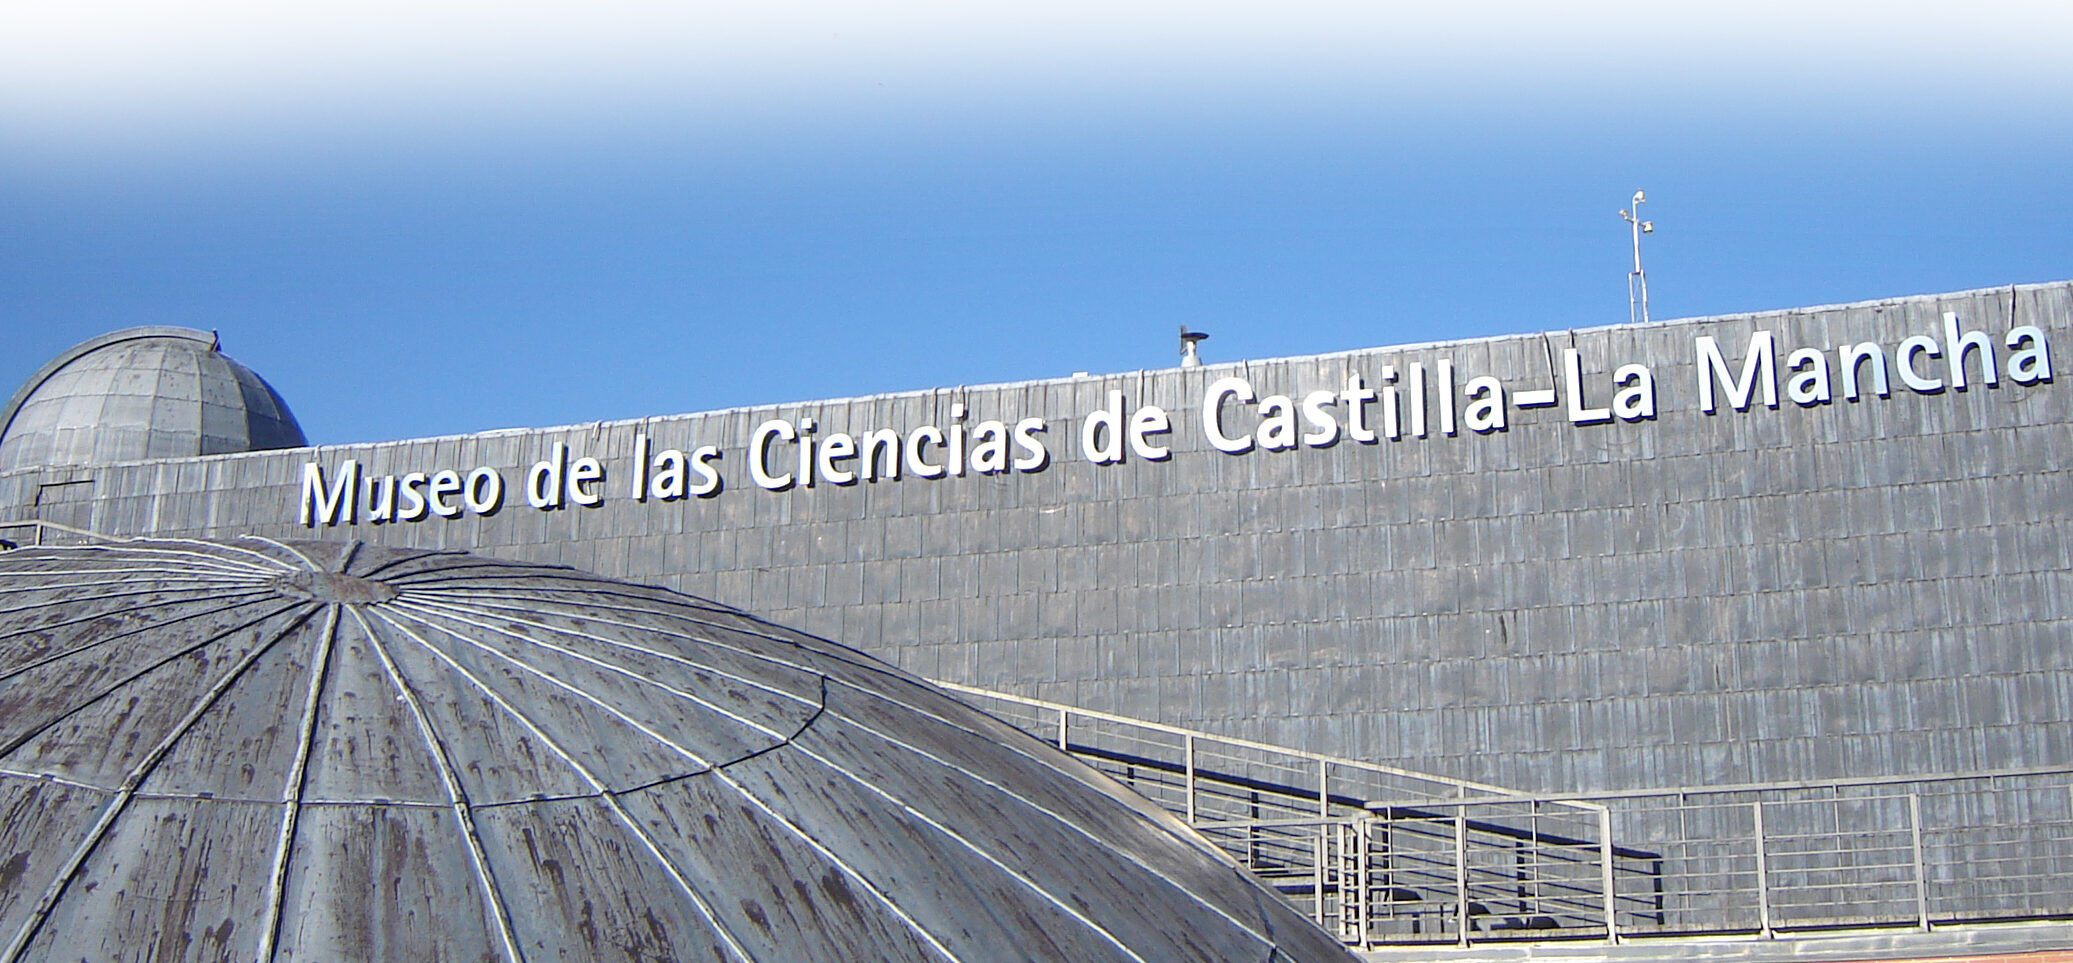 MUSEO DE LAS CIENCIAS DE CASTILLA-LA MANCHA		Cuenca	Cuenca	Museo